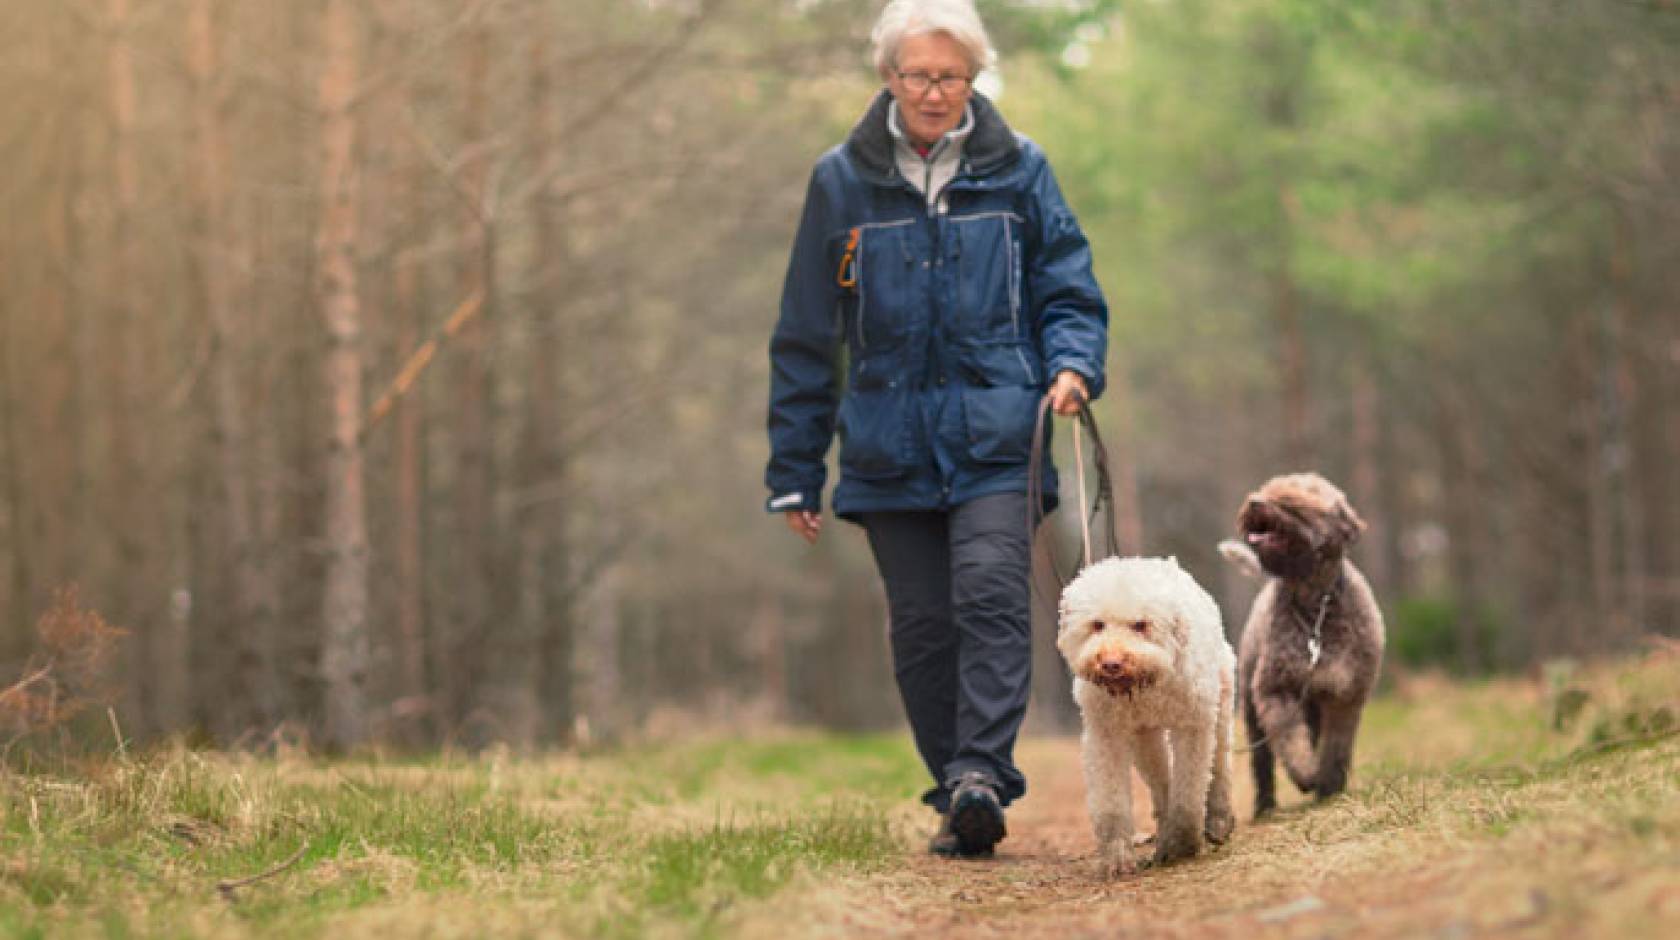 An older woman walks two dogs outside